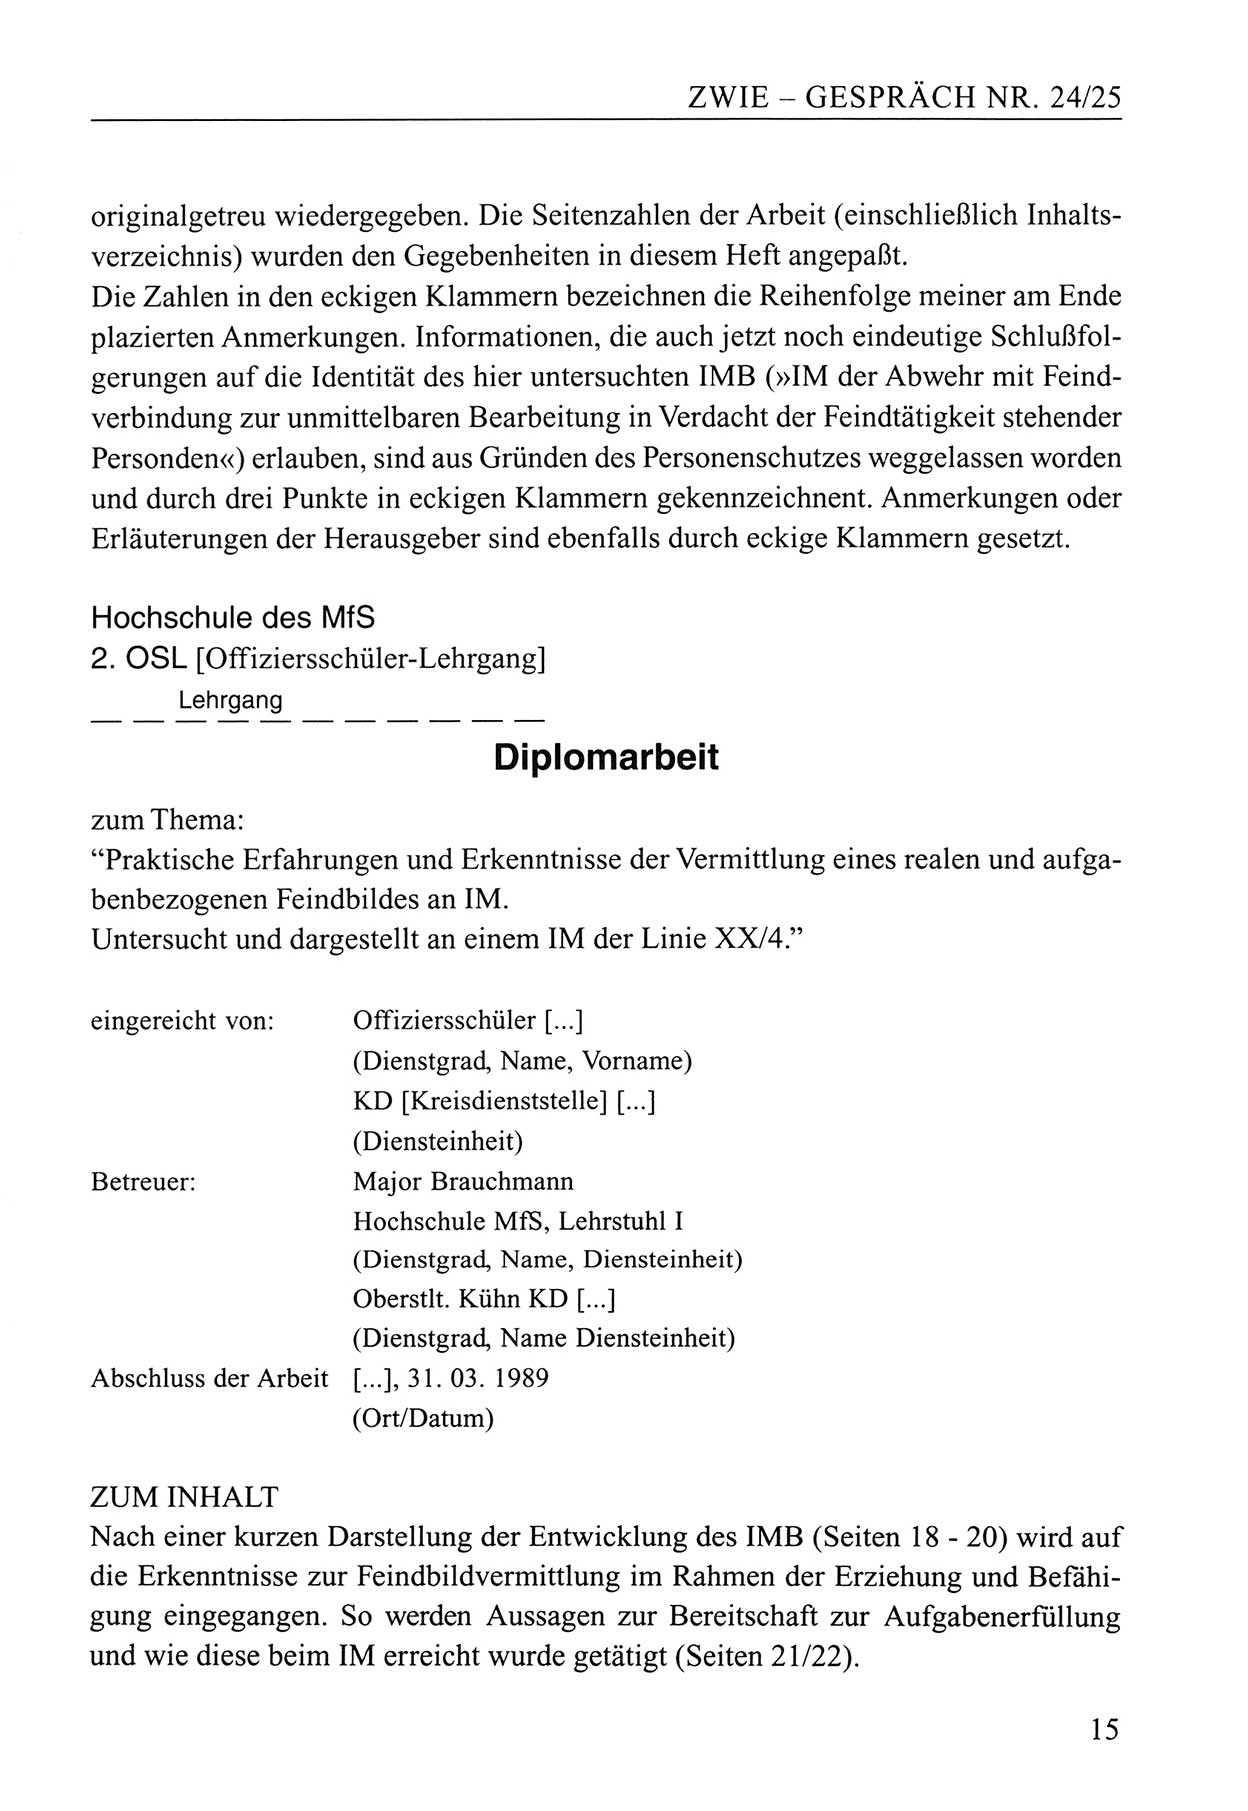 Zwie-Gespräch, Beiträge zum Umgang mit der Staatssicherheits-Vergangenheit [Deutsche Demokratische Republik (DDR)], Ausgabe Nr. 24/25, Berlin 1994, Seite 15 (Zwie-Gespr. Ausg. 24/25 1994, S. 15)